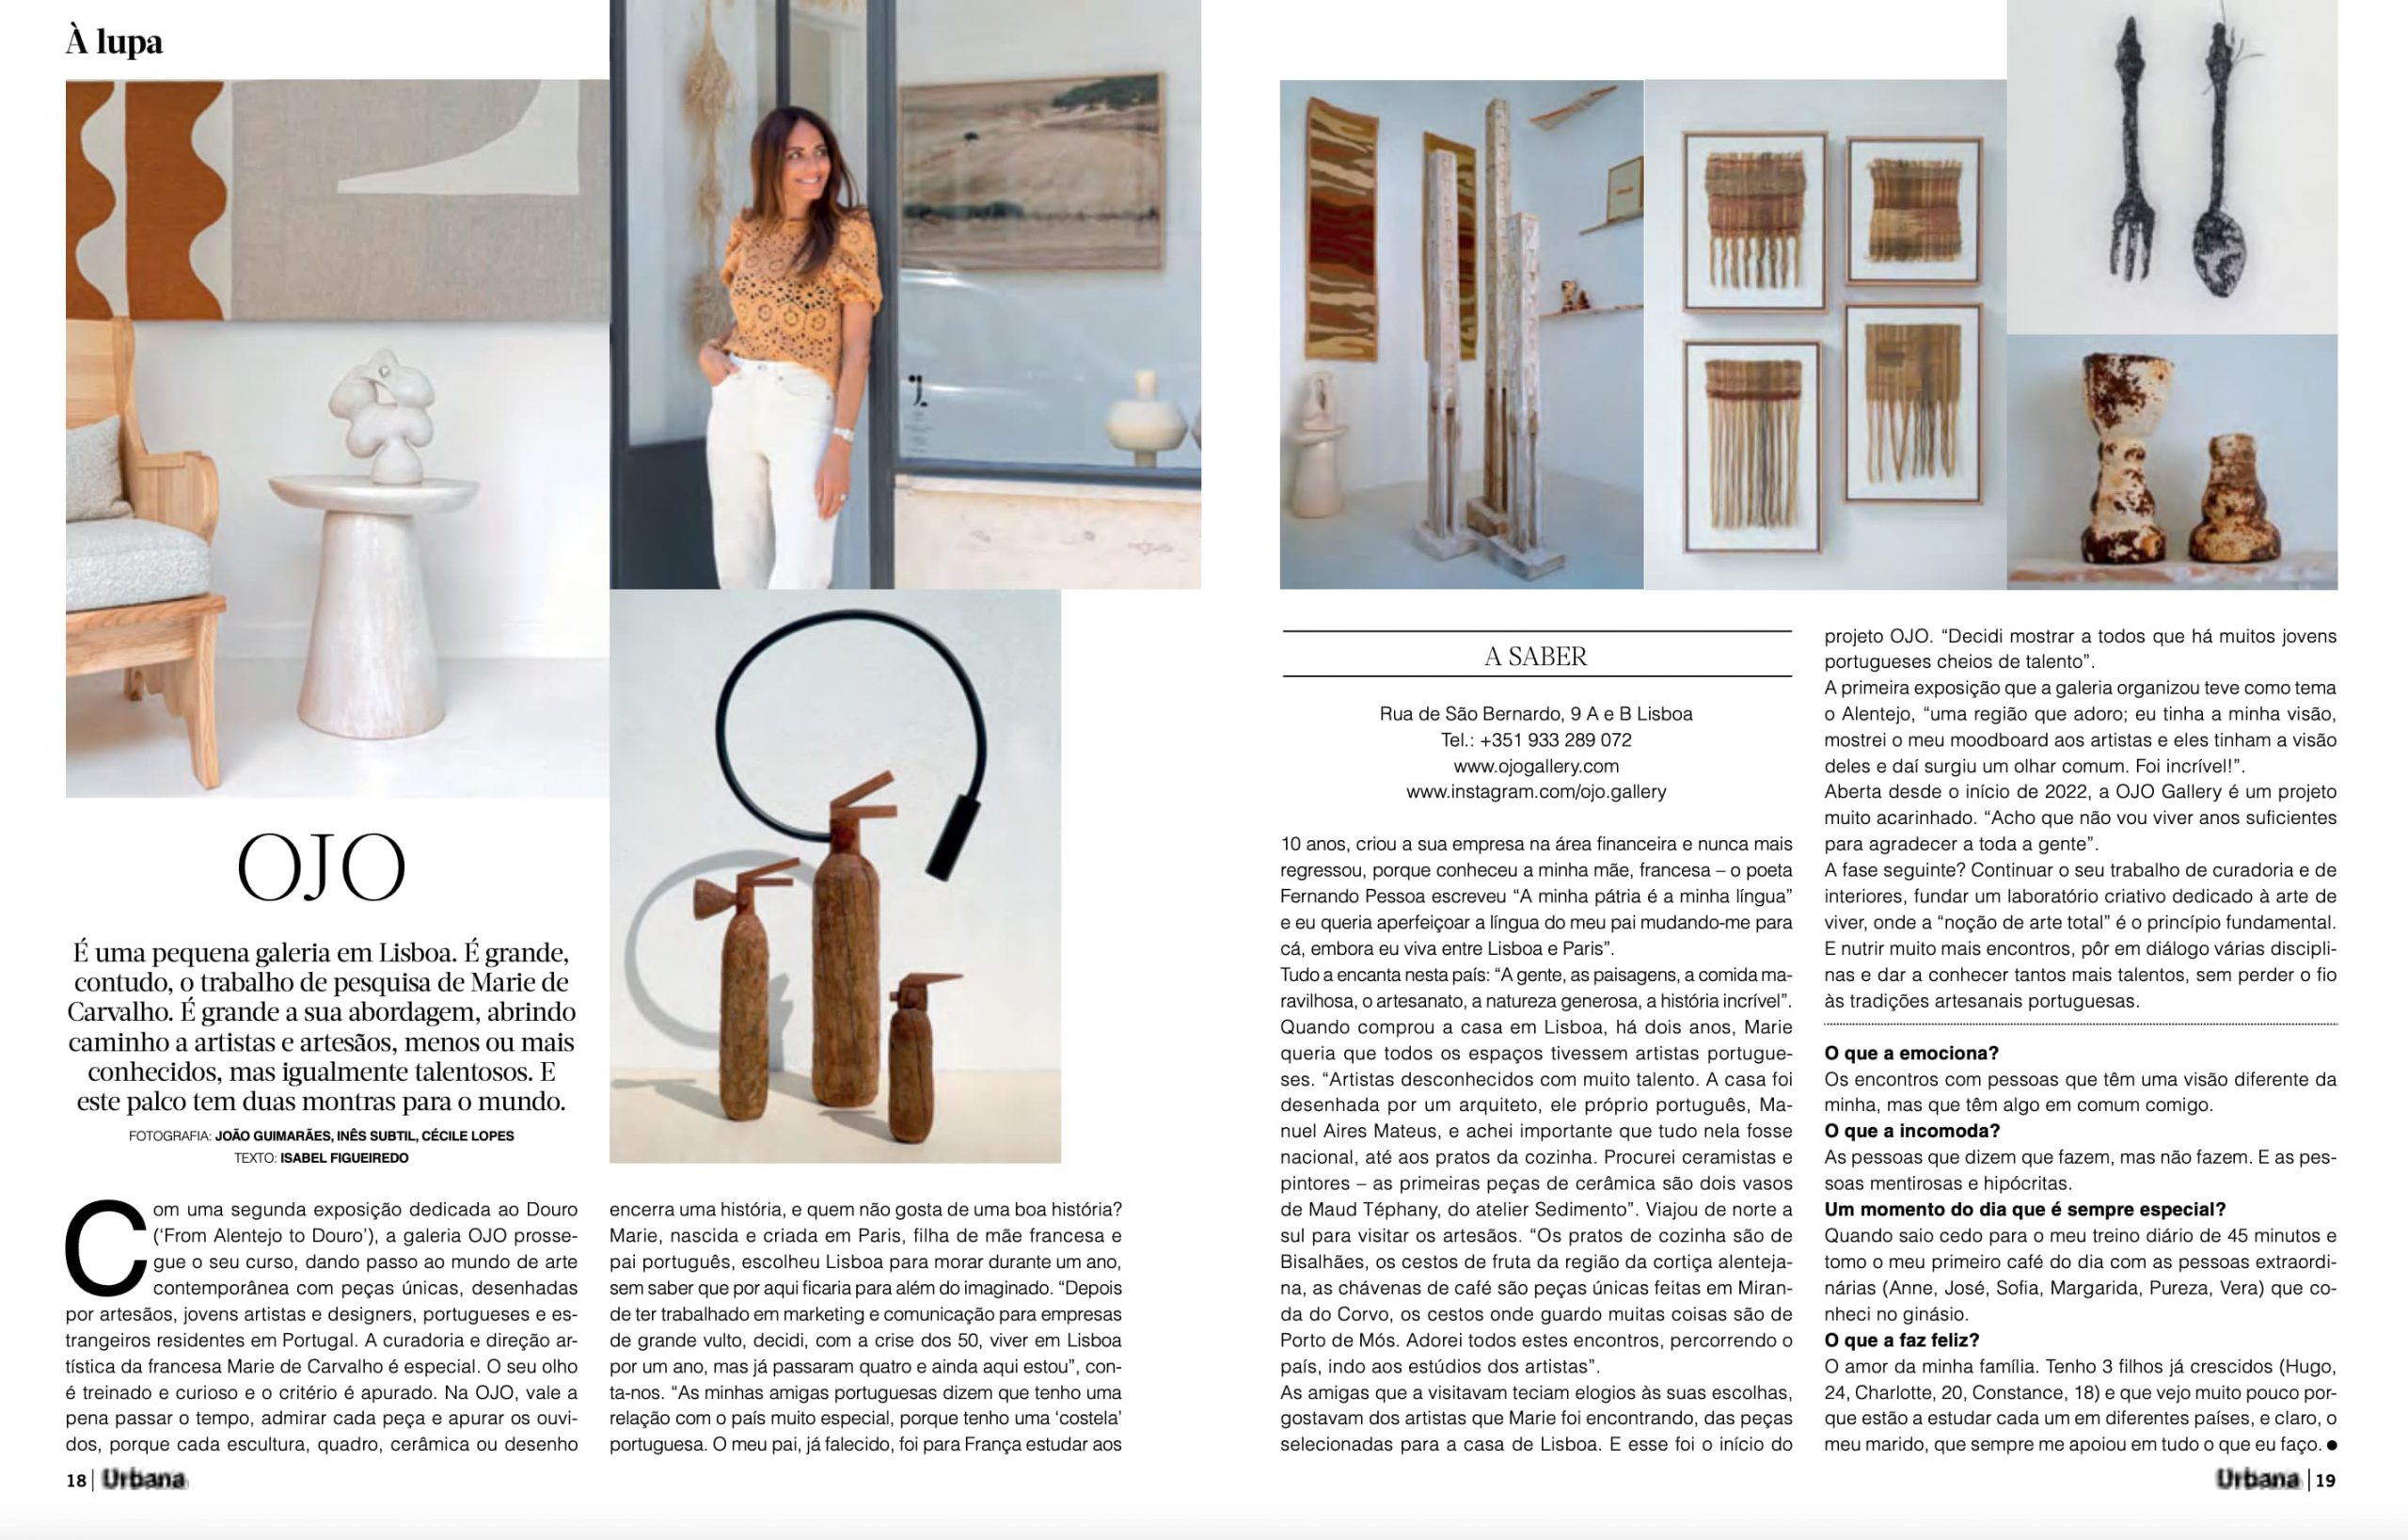 ojo-gallery-marie-de-carvalho-press-urbana-design-magazine